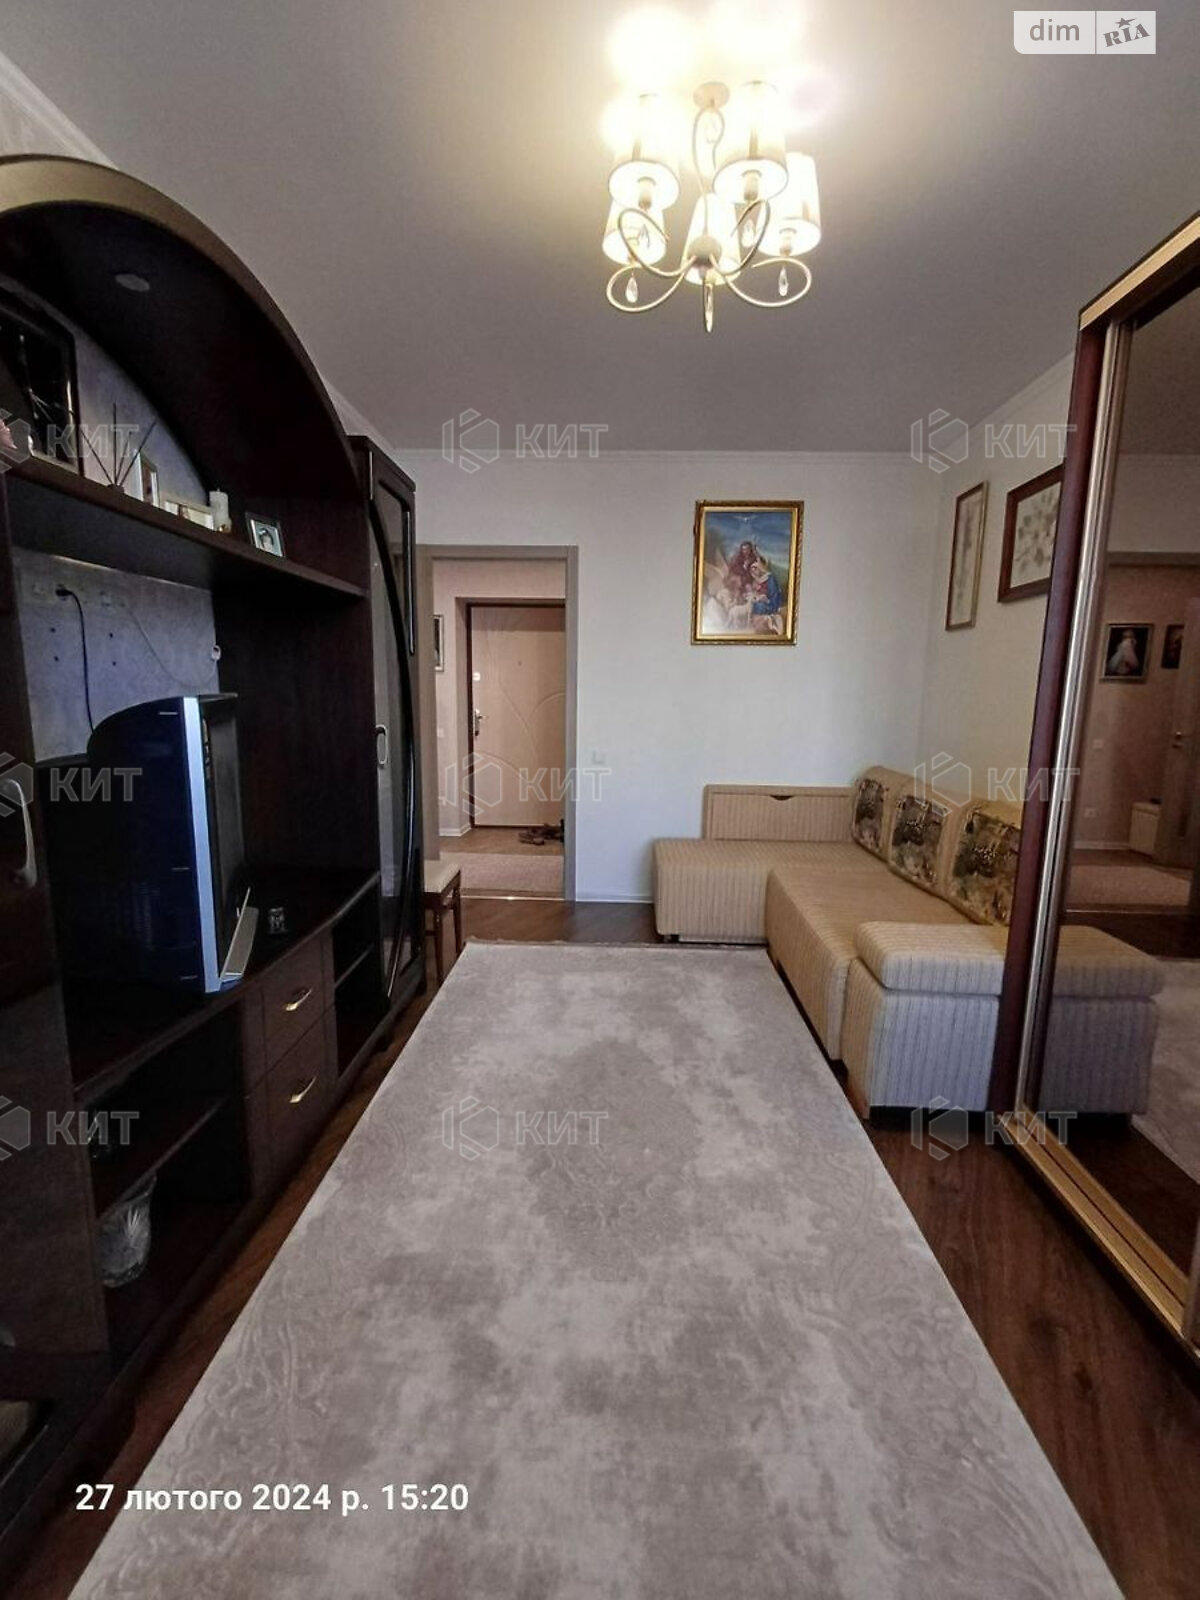 Продажа однокомнатной квартиры в Харькове, на ул. Велозаводская 37, район 627-ой микрорайон фото 1